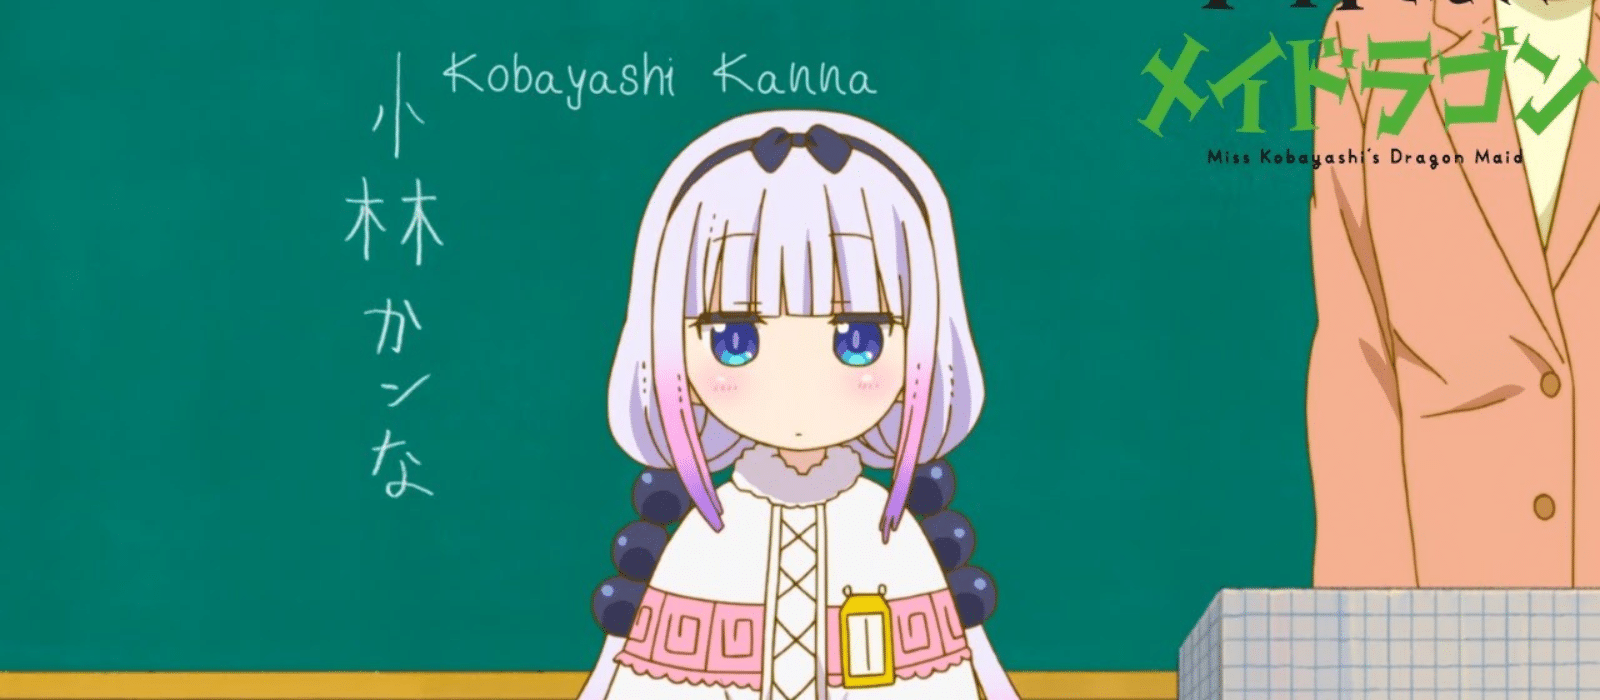 miss kobayashi's dragon maid characters